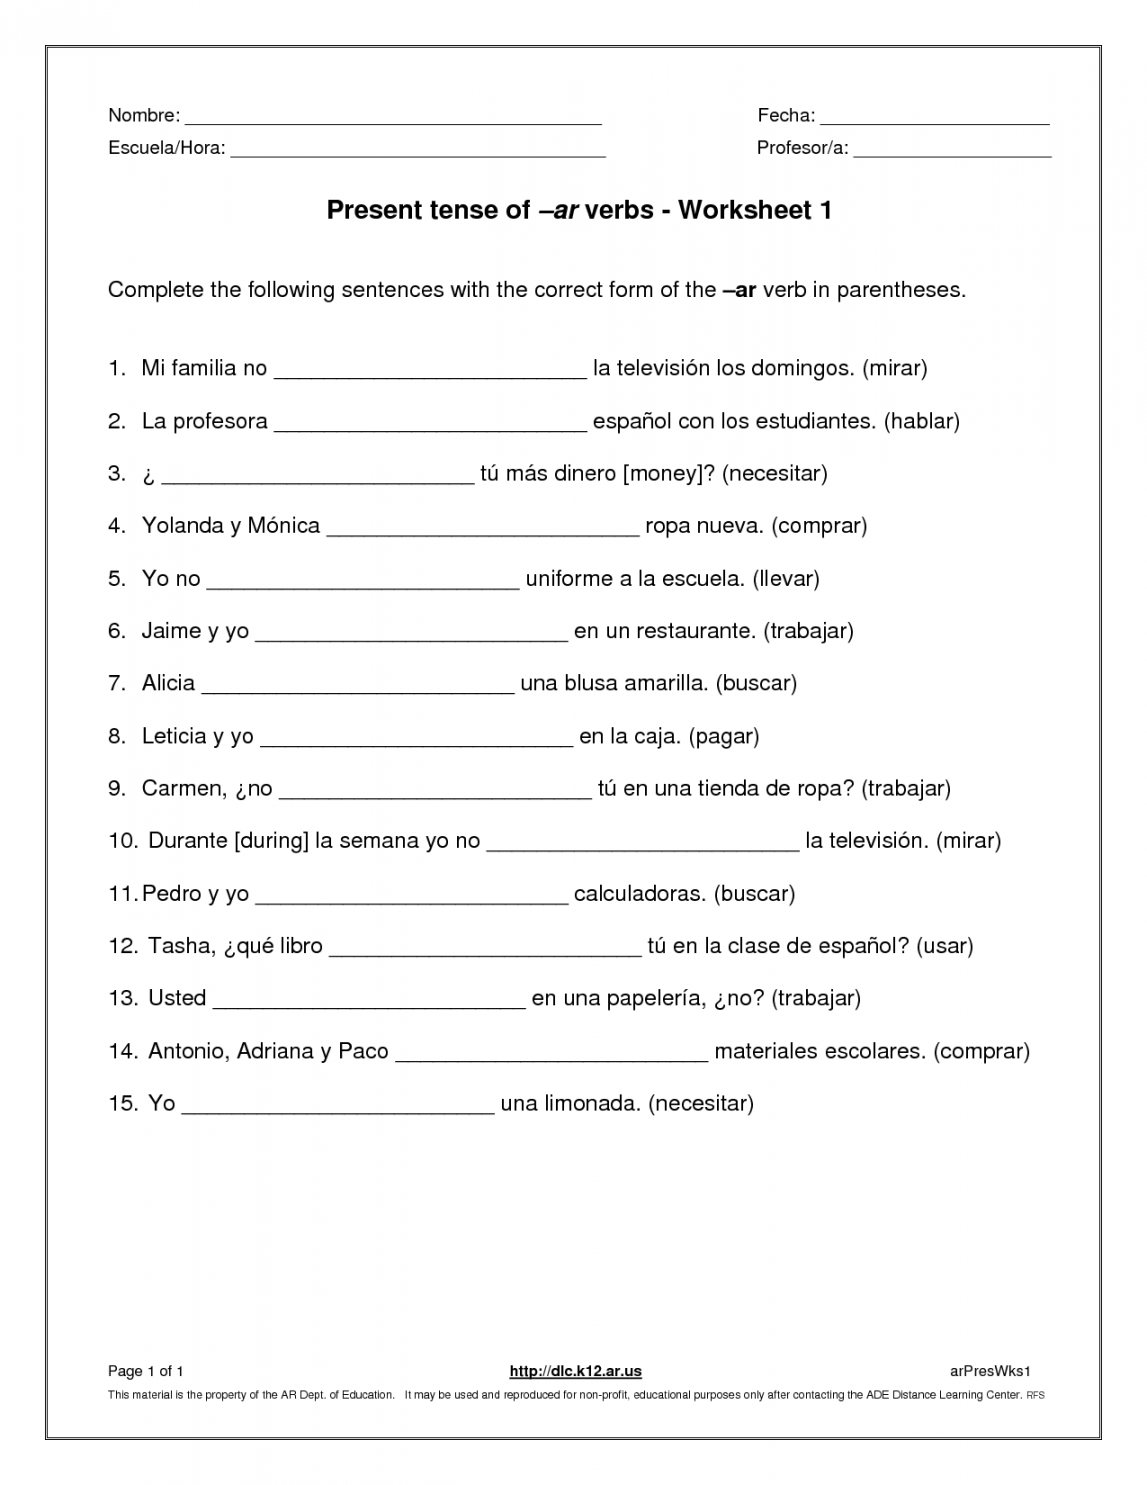 Present Tense Verbs Worksheets  Verb worksheets, Spanish verbs